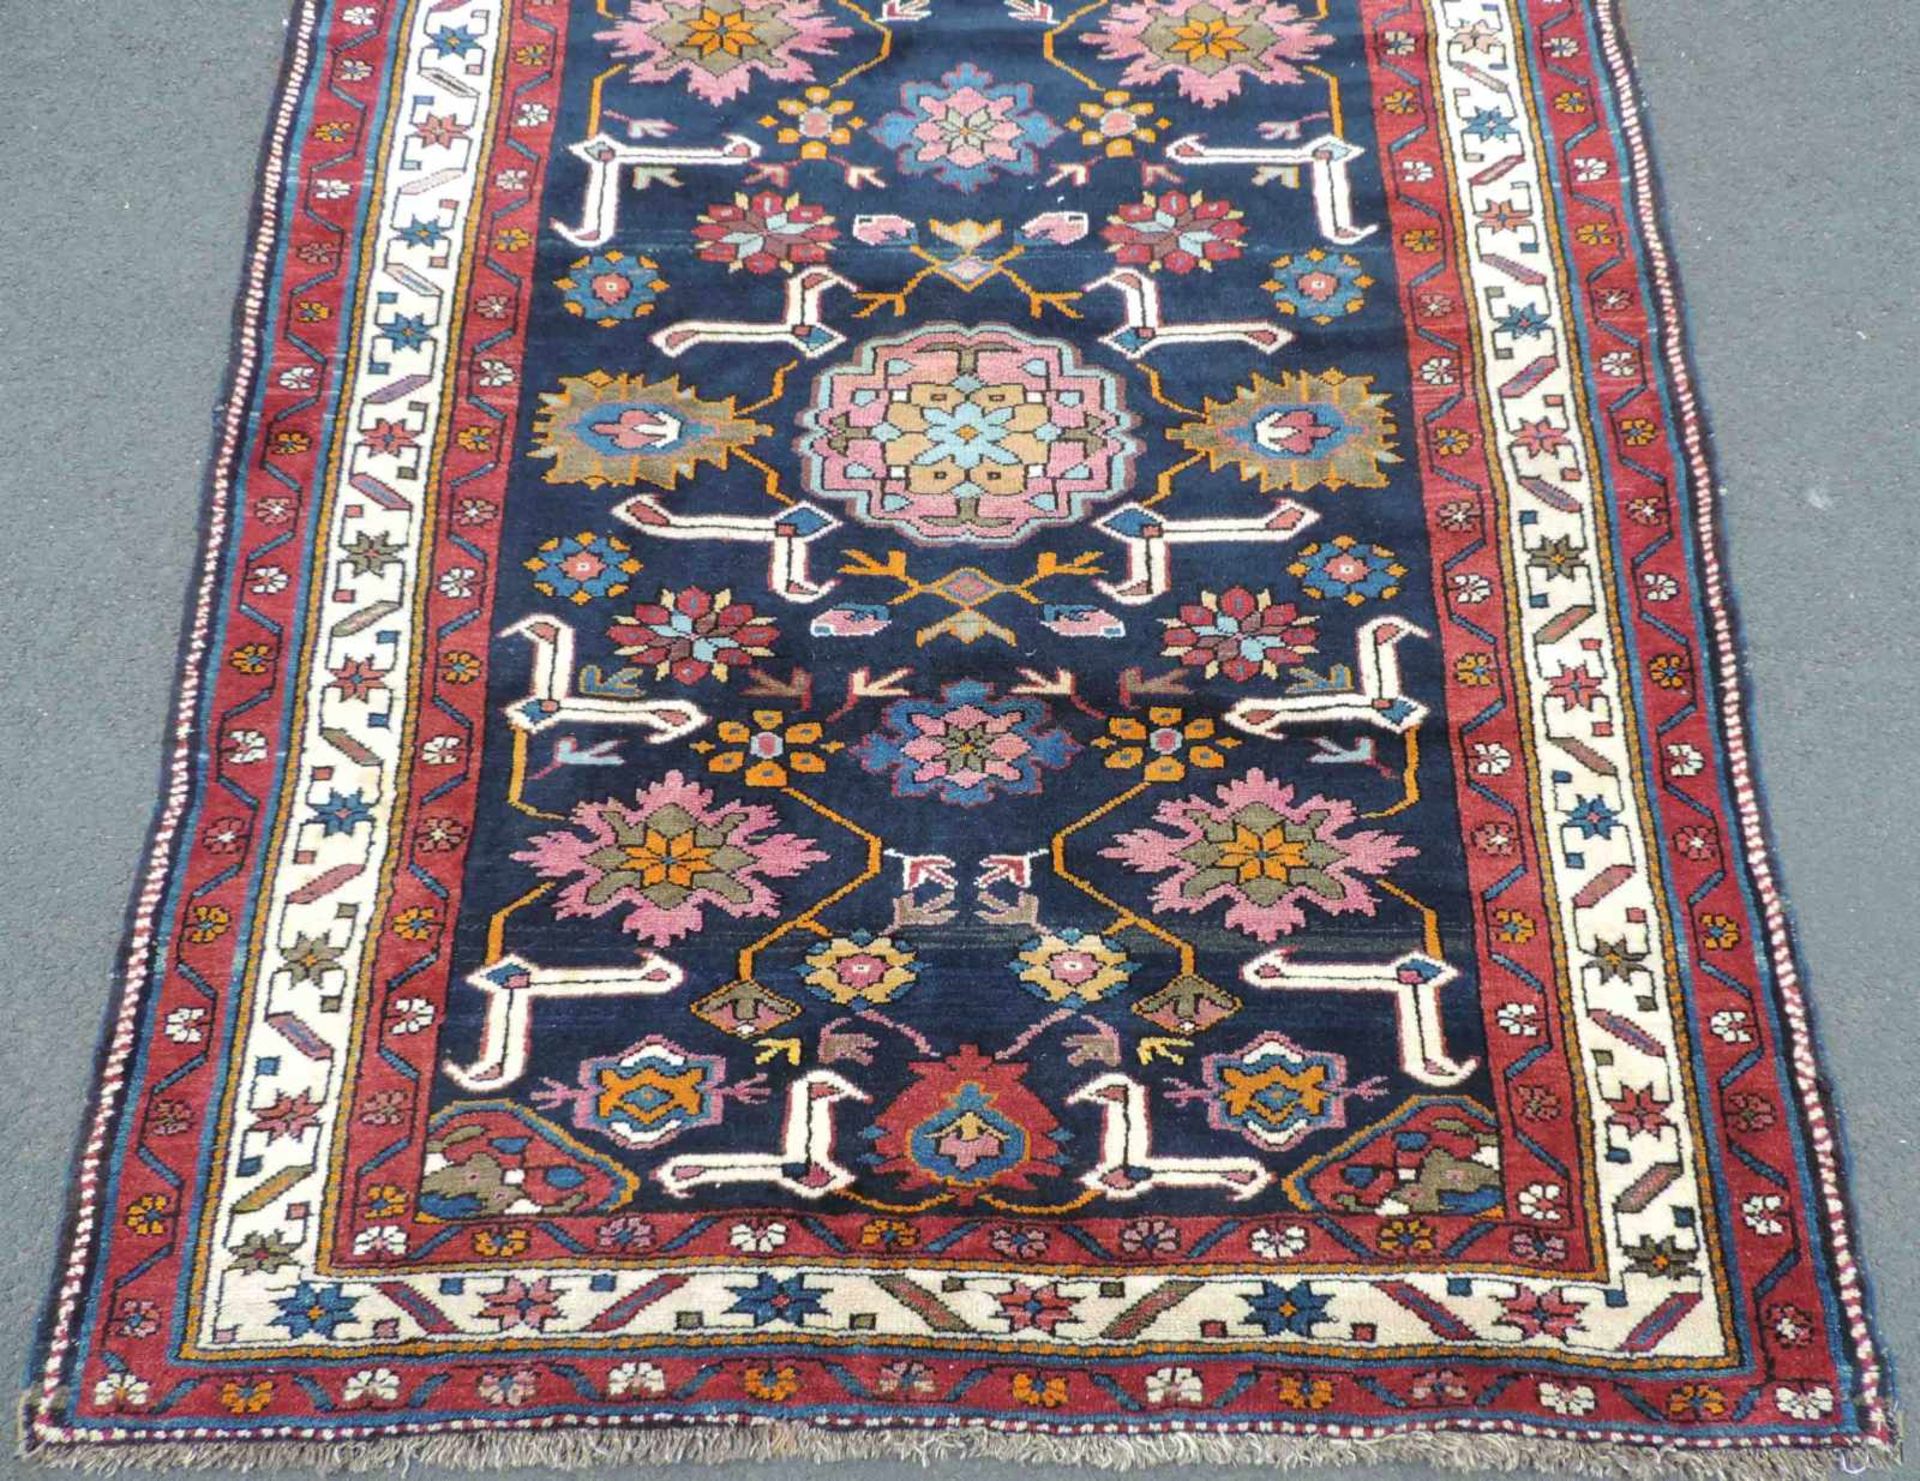 Eriwan Dorfteppich. Kaukasus. Alt um 1940. 188 cm x 140 cm. Handgeknüpft. Wolle auf Wolle. Yerevan - Bild 2 aus 4